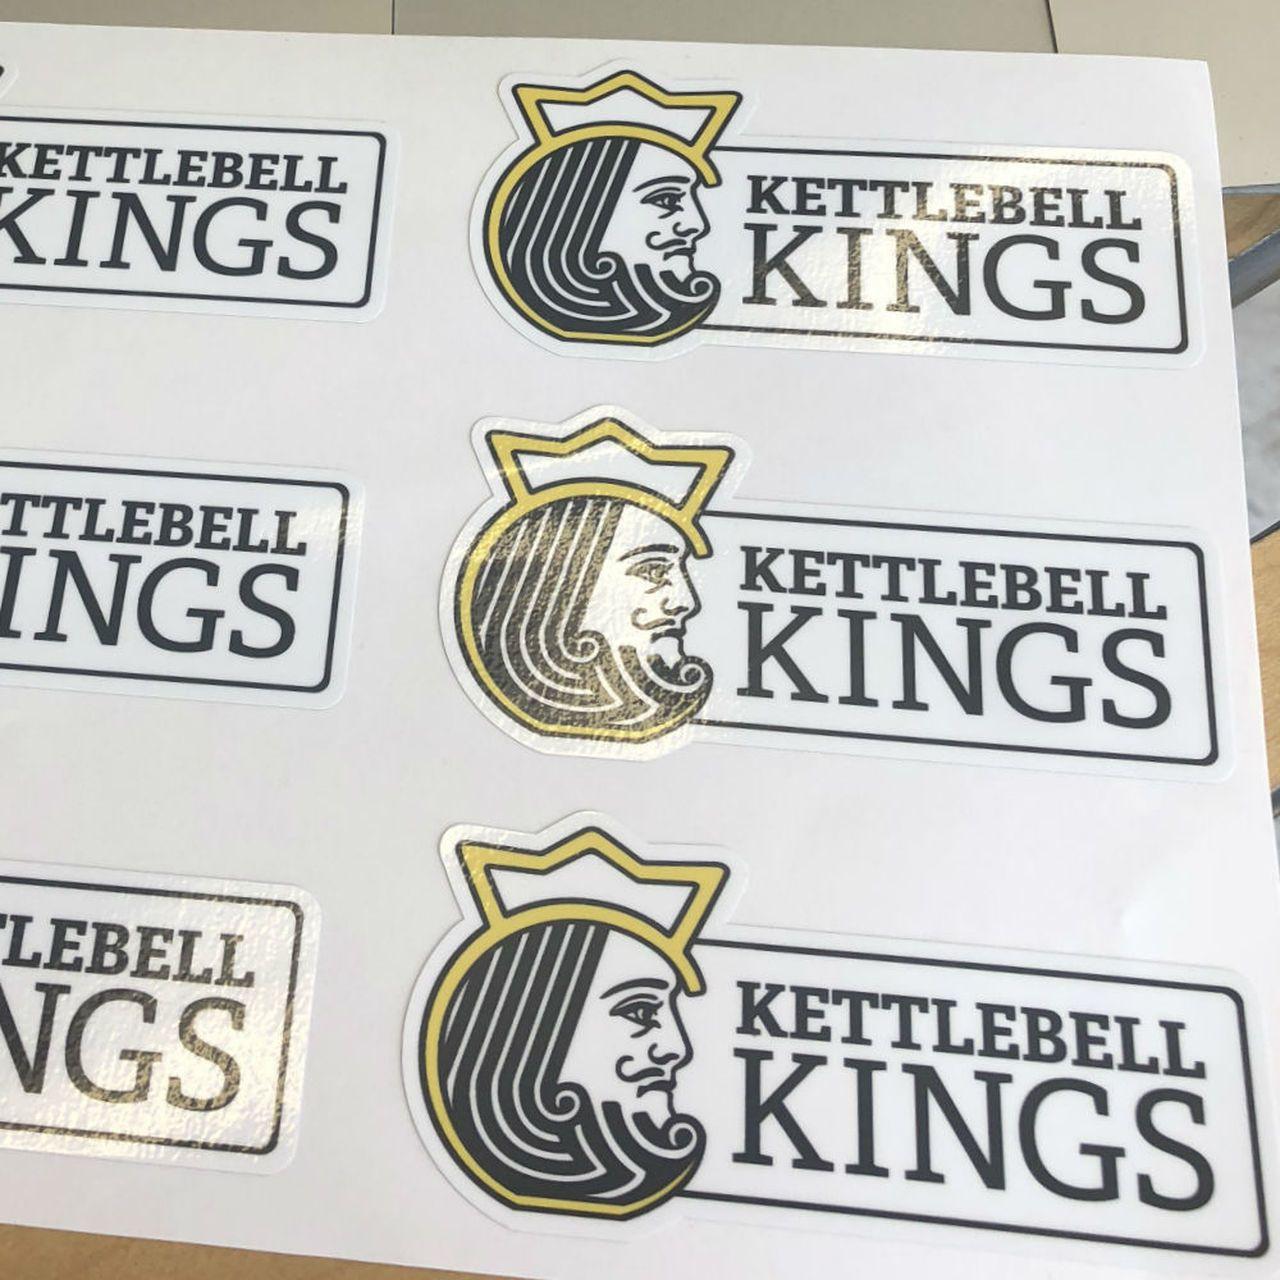 Kettlebell Logo - Kettlebell Kings Logo Bumper Sticker